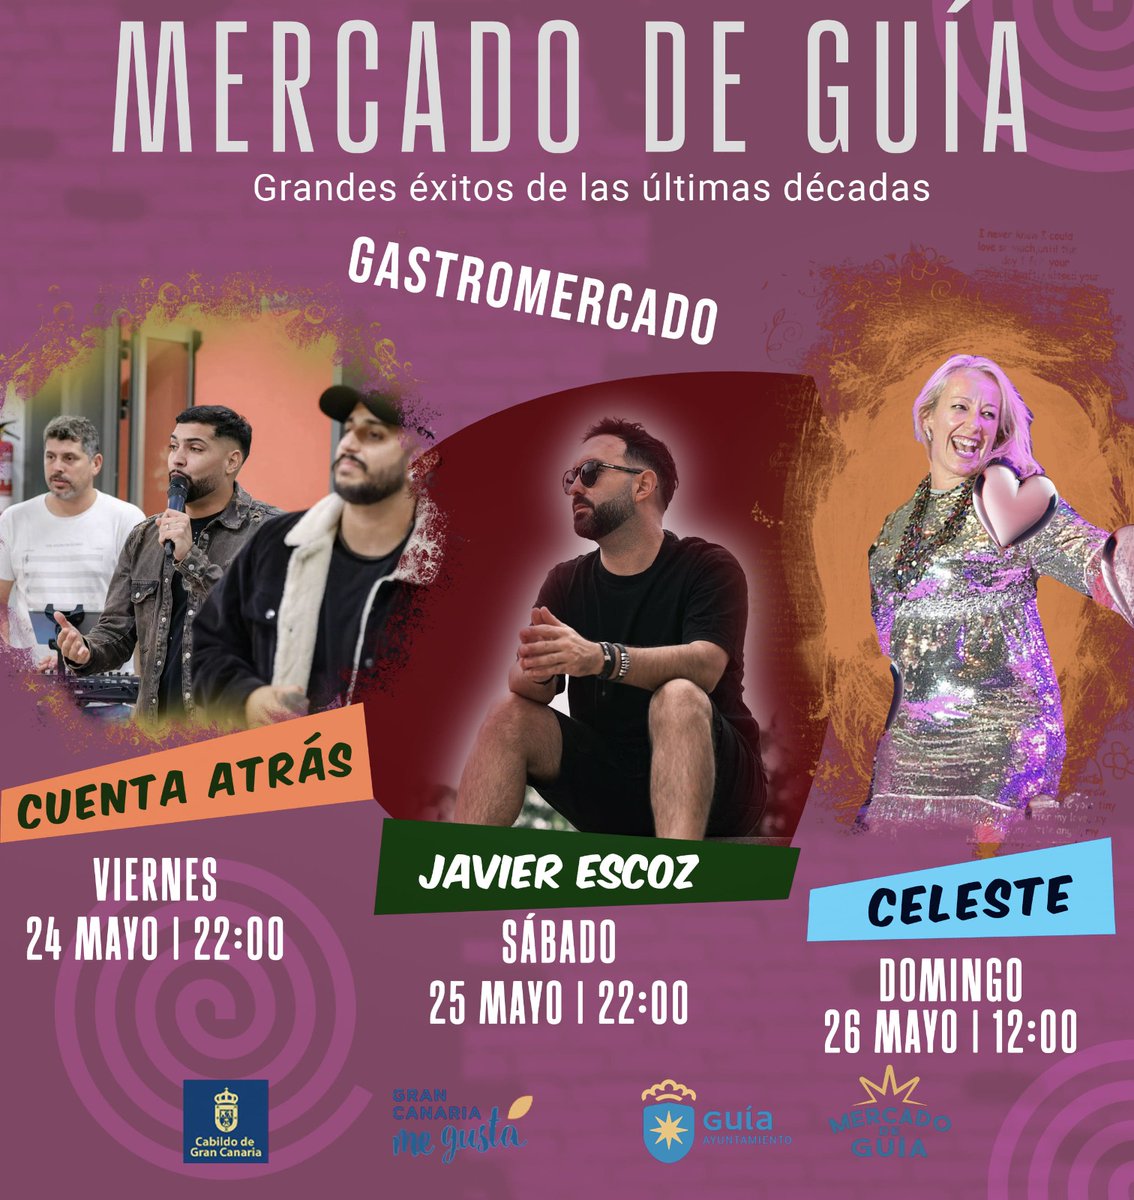 🎶 En el #MercadoDeGuía ya tenemos todo listo para recibirles el próximo fin de semana con las mejores actuaciones musicales: ▪️ #CuentaAtras ▪️ @javierescoz ▪️ #Celeste #SantaMaríadeGuía